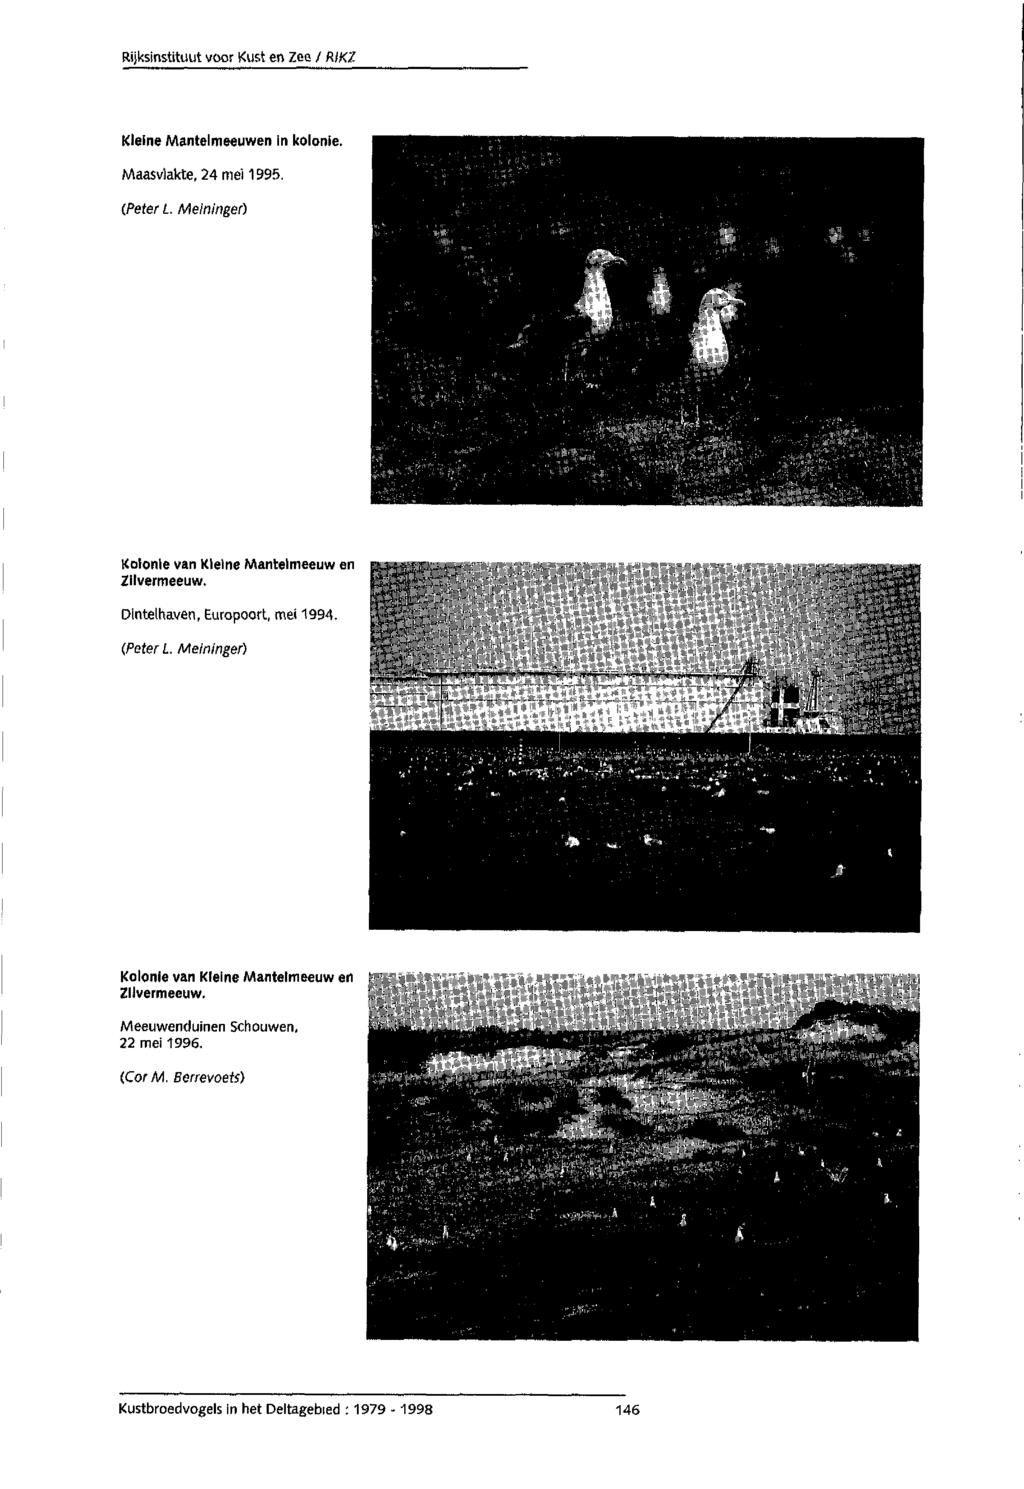 Kleine Mantelmeeuwen in kolonie. Maasvlakte, 24 mei 1995. (Peter L. Meininger) Kolonie van Kleine Mantelmeeuw en Zilvermeeuw. Dintelhaven, Europoort, mei 1994.